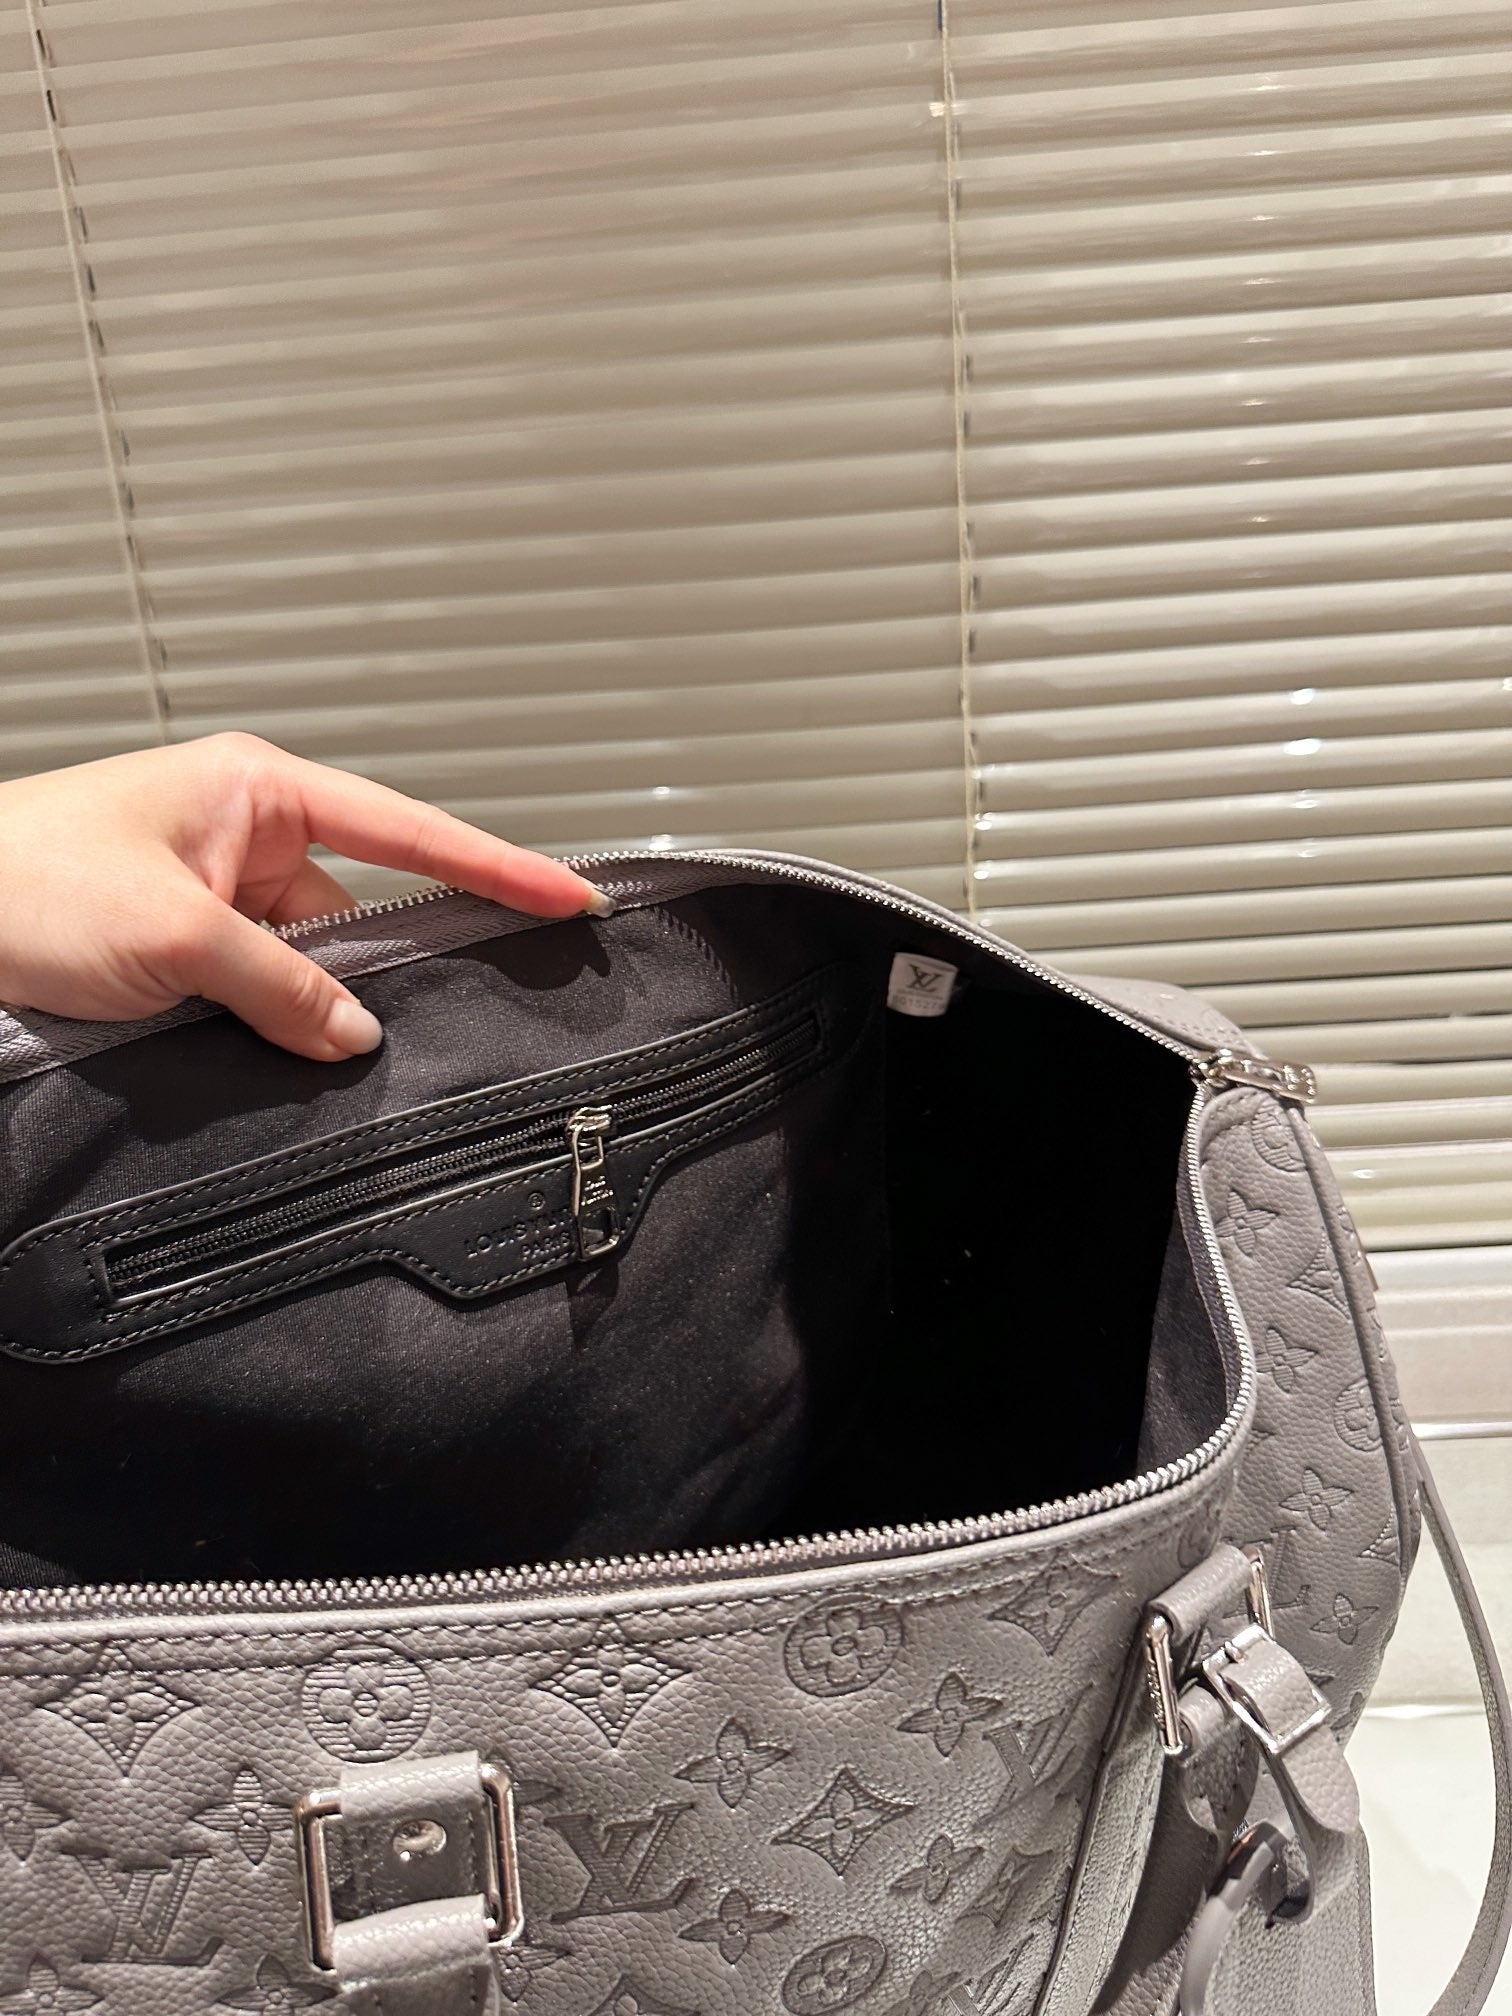 Louis vuitton handbags ( duffle,  weekender ,traveling)